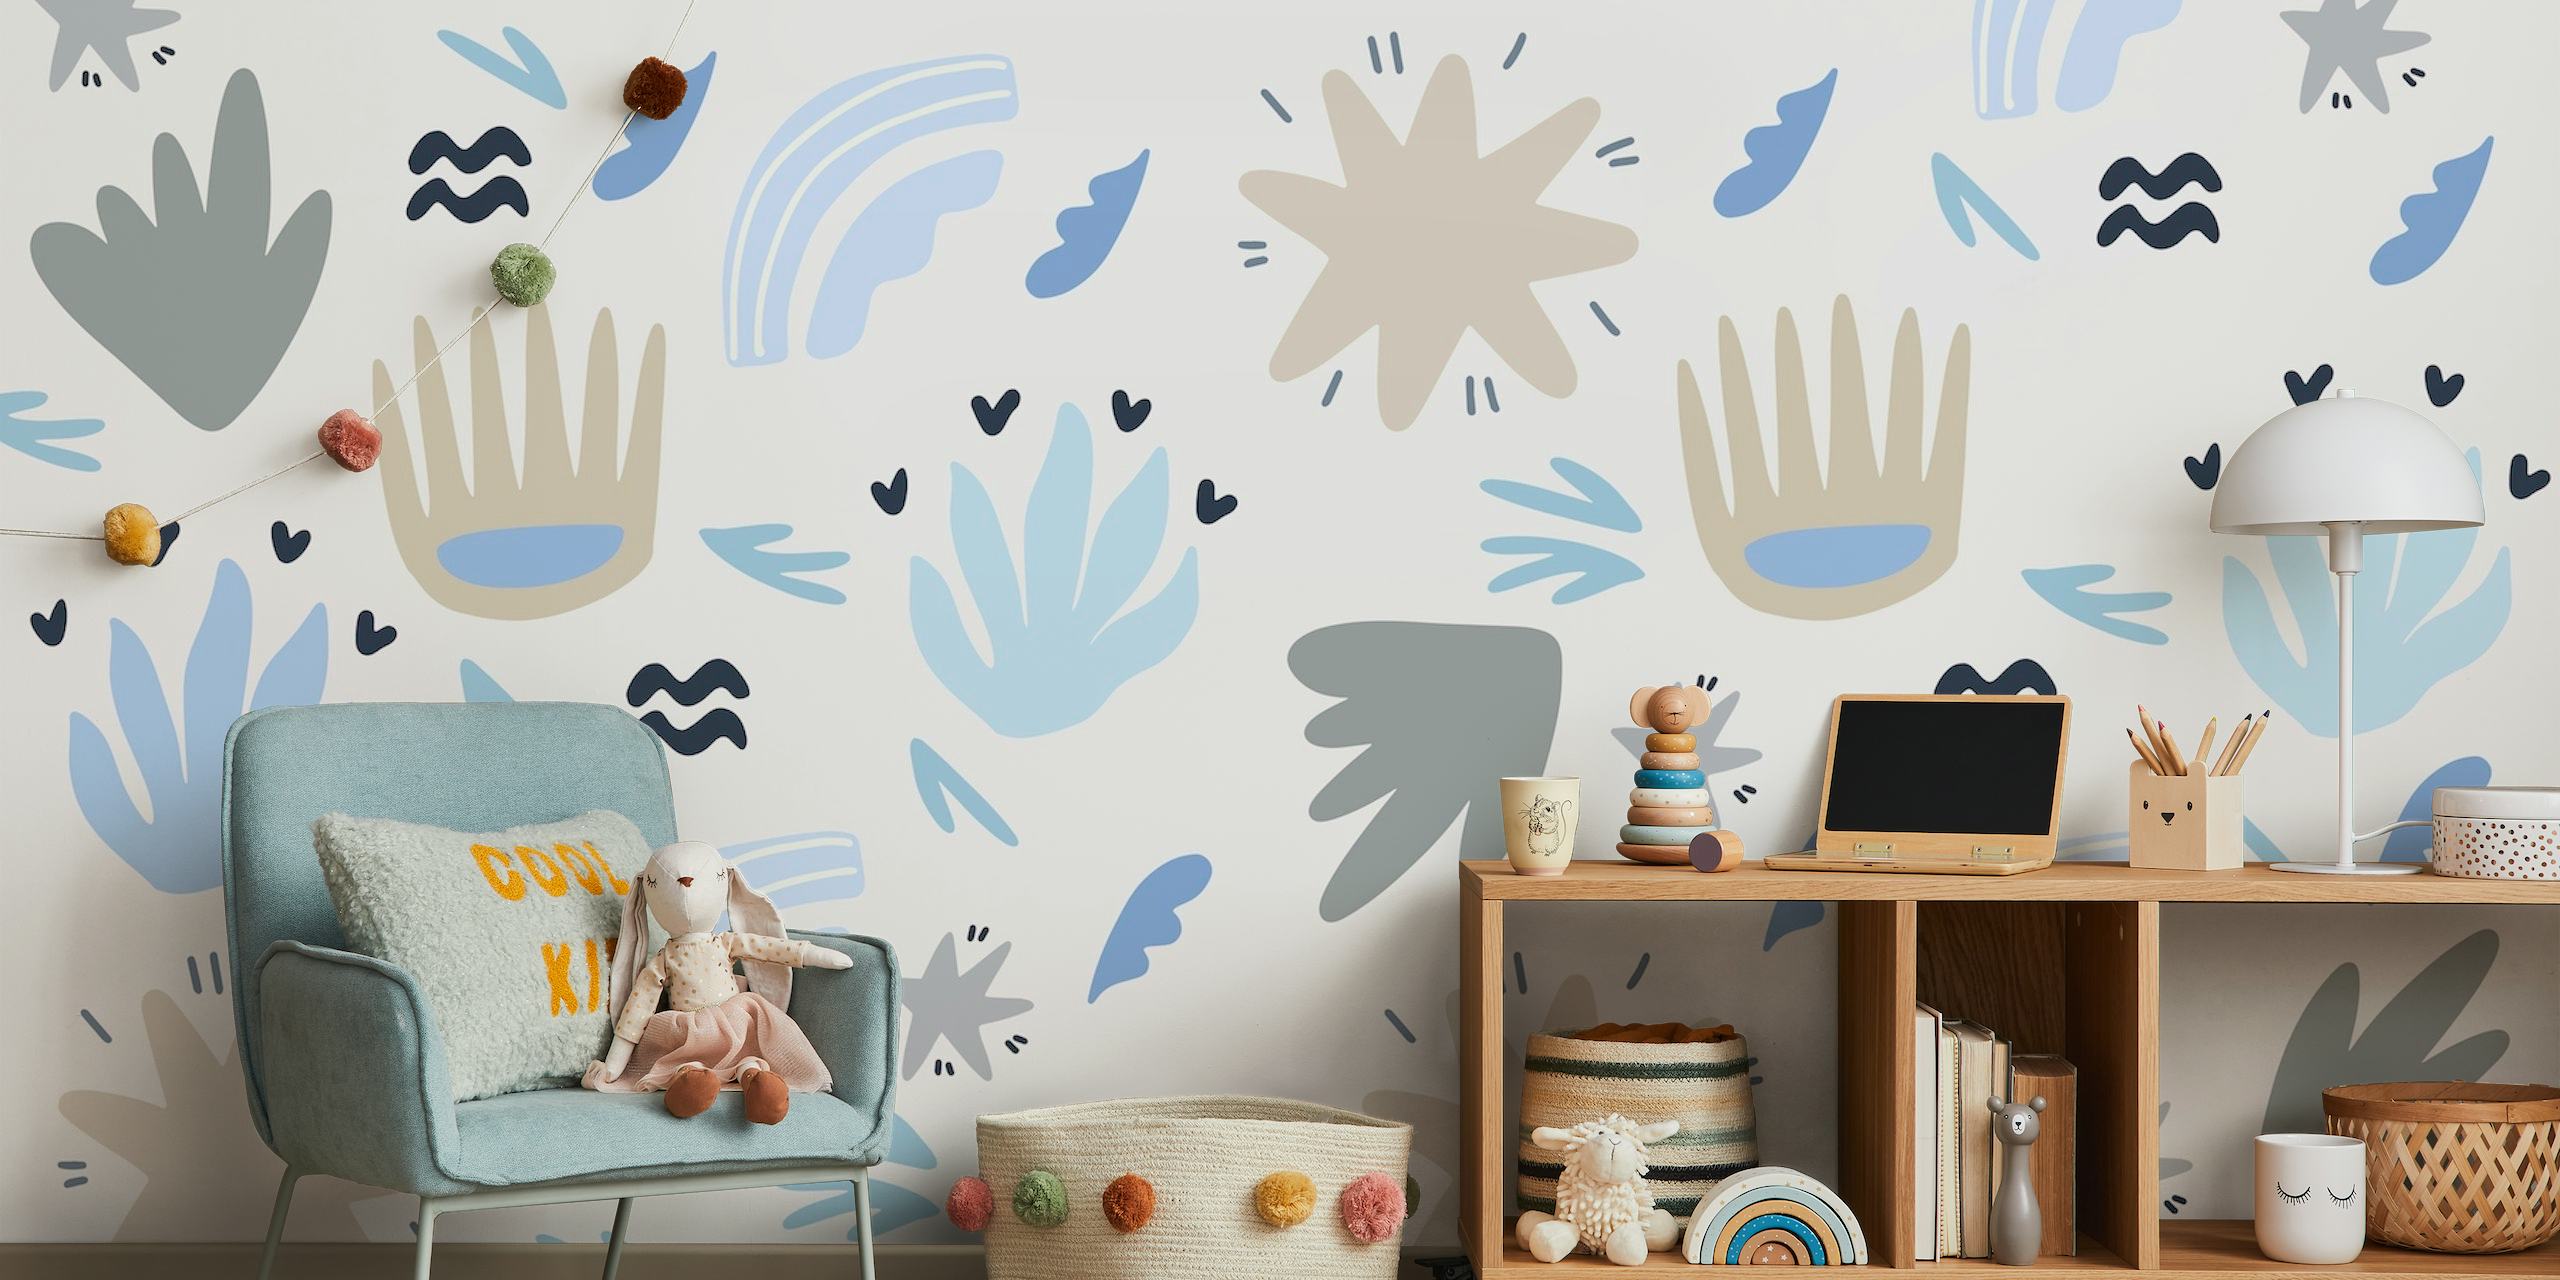 Motif floral et formes abstraits dans les tons de bleu, gris et blanc pour décoration murale pour enfants